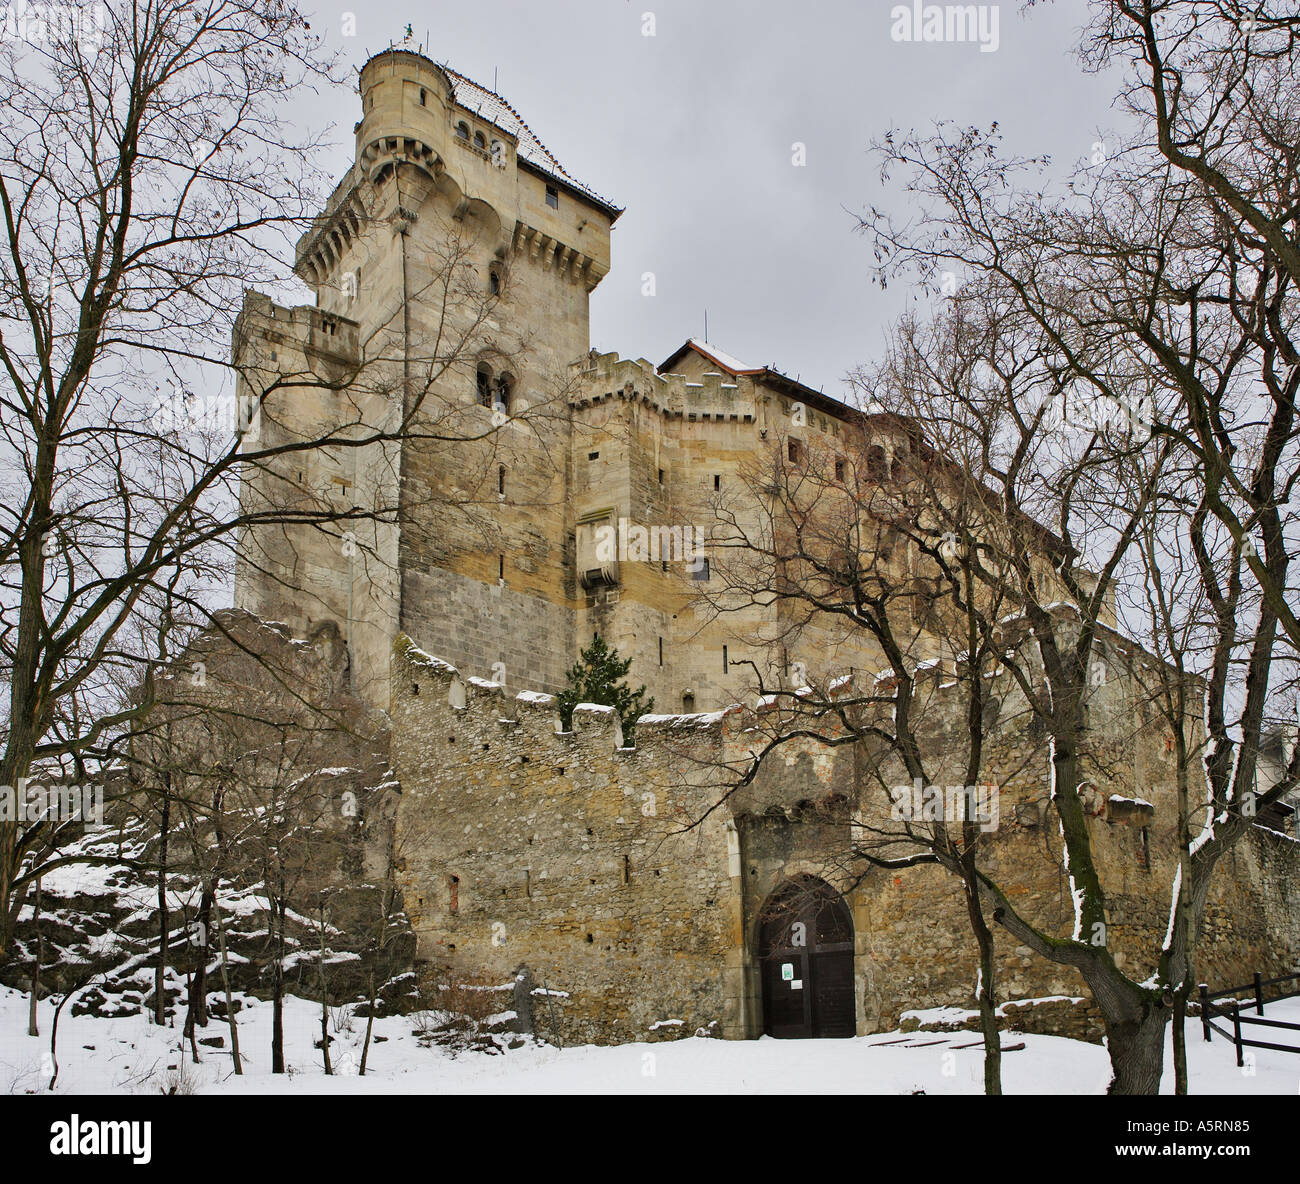 castle Liechtenstein at Maria Enzersdorf Lower Austria Stock Photo